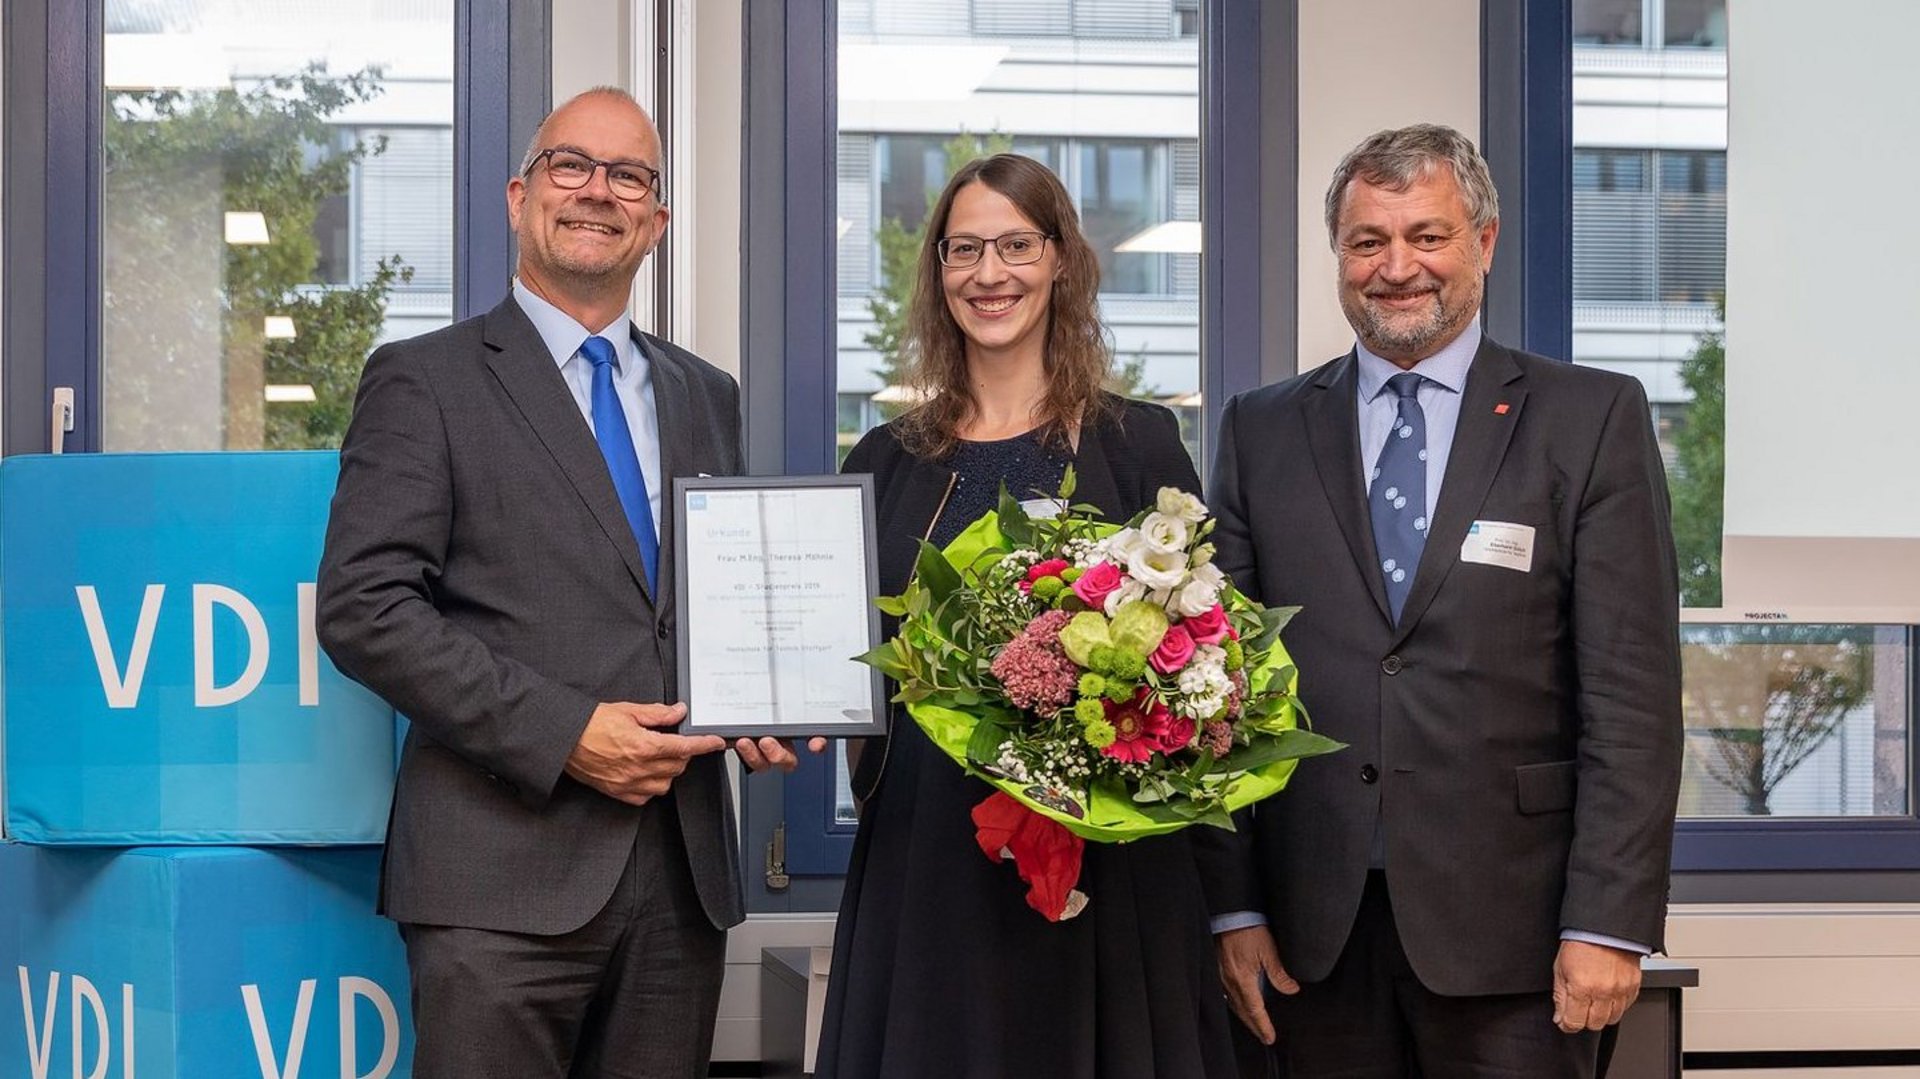 Verleihung des VDI Preises an Frau Möhnle durch Prof. Dr. Riedel im Beisein von Prof. Dr. Gülch